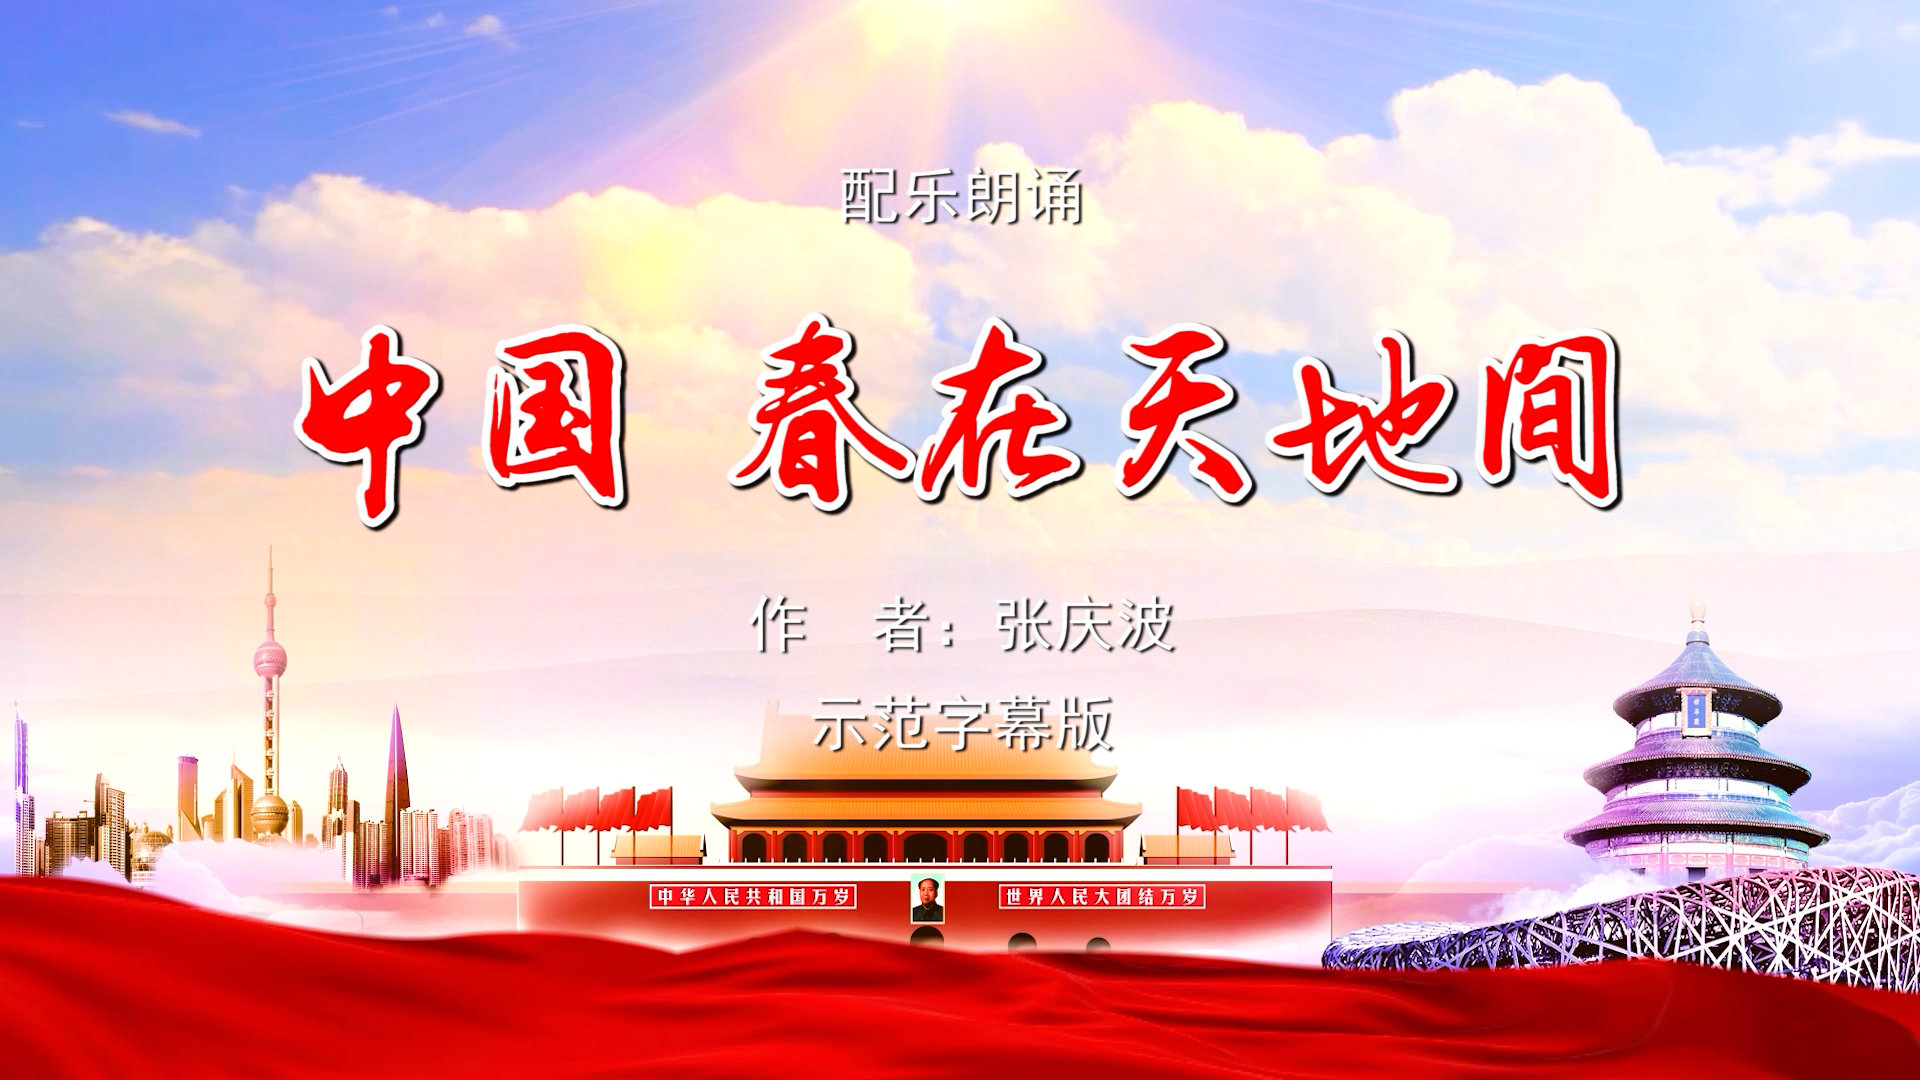 中国春在天地间 歌颂祖国春天主题 多人集体诗歌